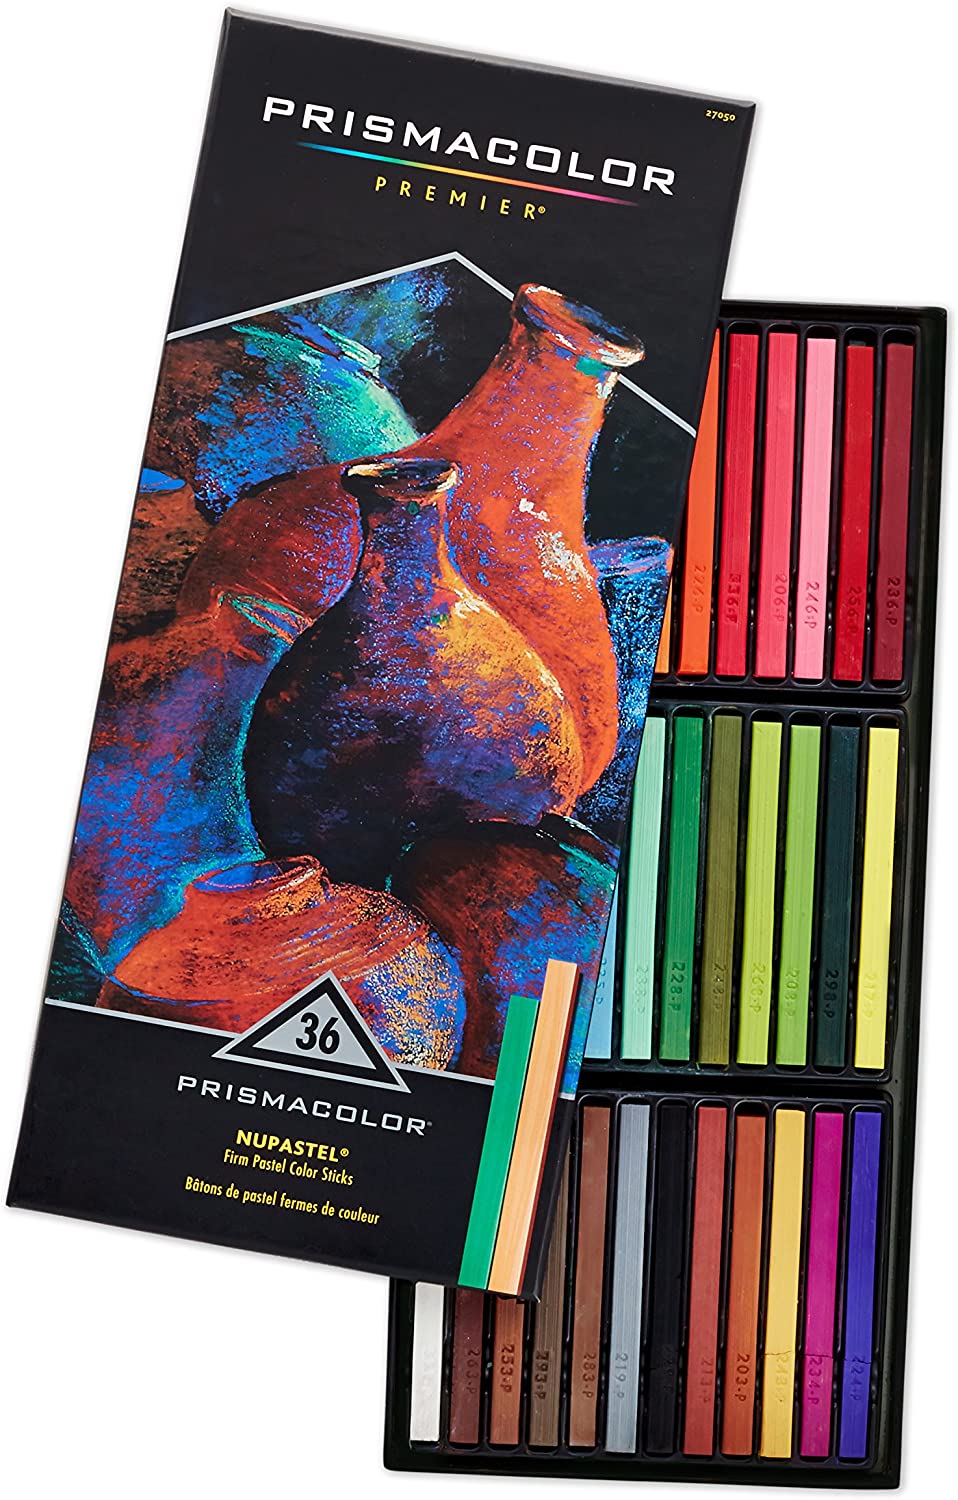 Prismacolor  Premier NuPastel Firm Pastel Color Sticks, 36 Count